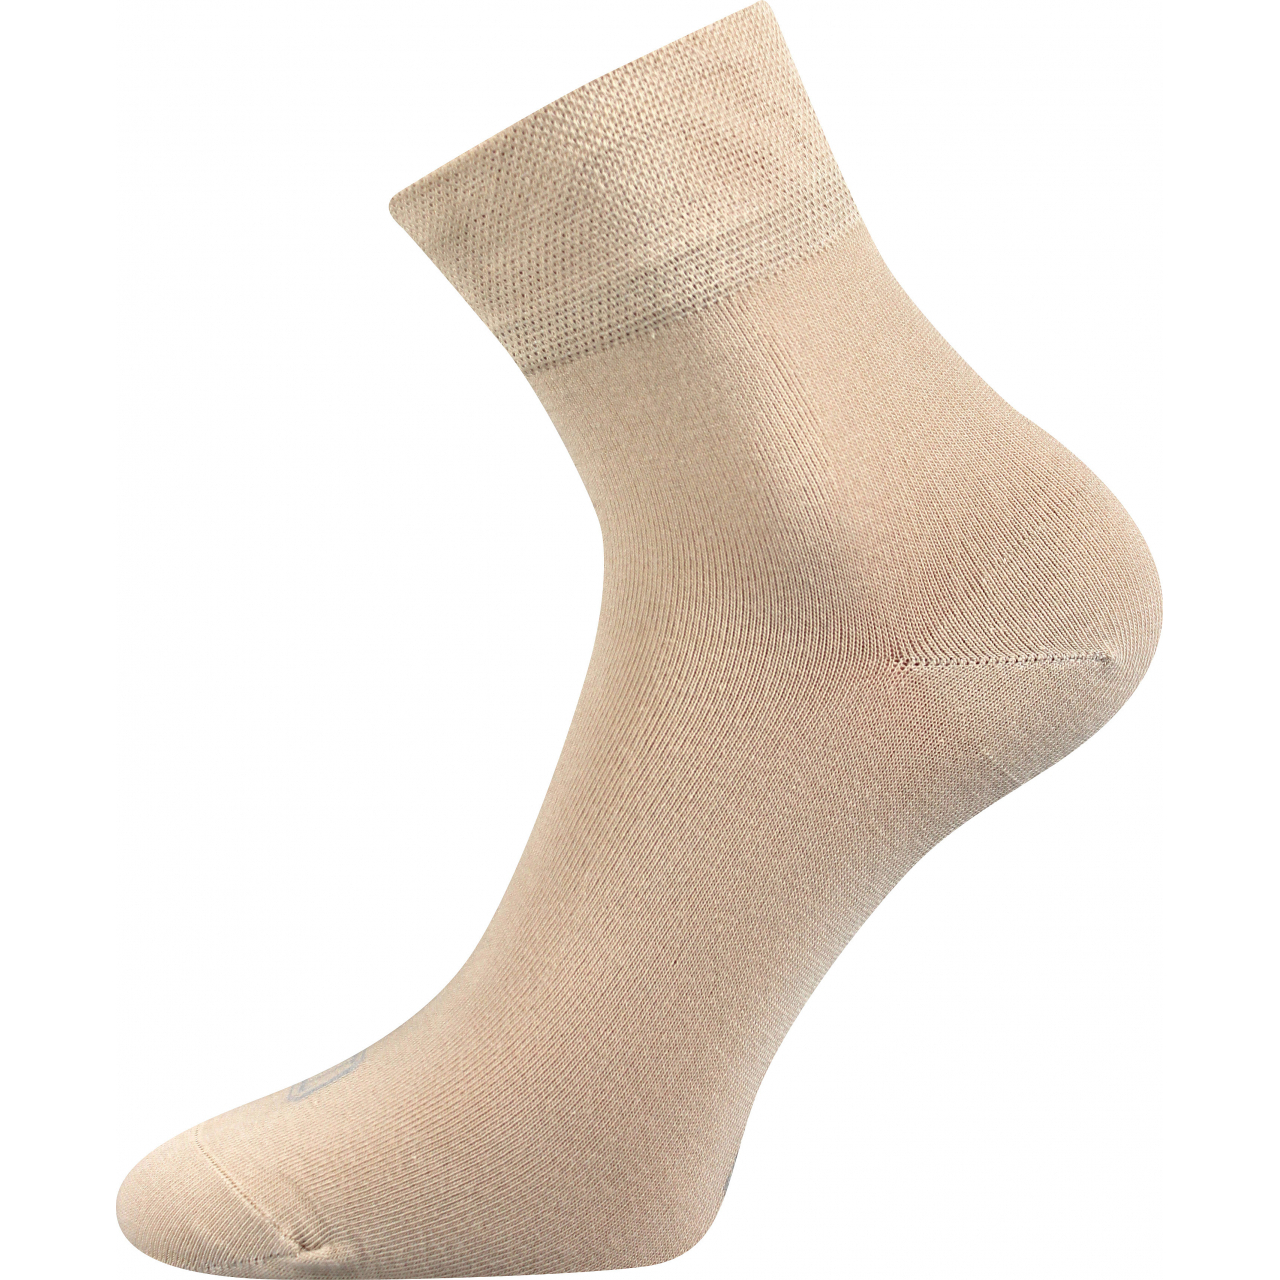 Ponožky unisex klasické Lonka Emi - béžové, 35-38